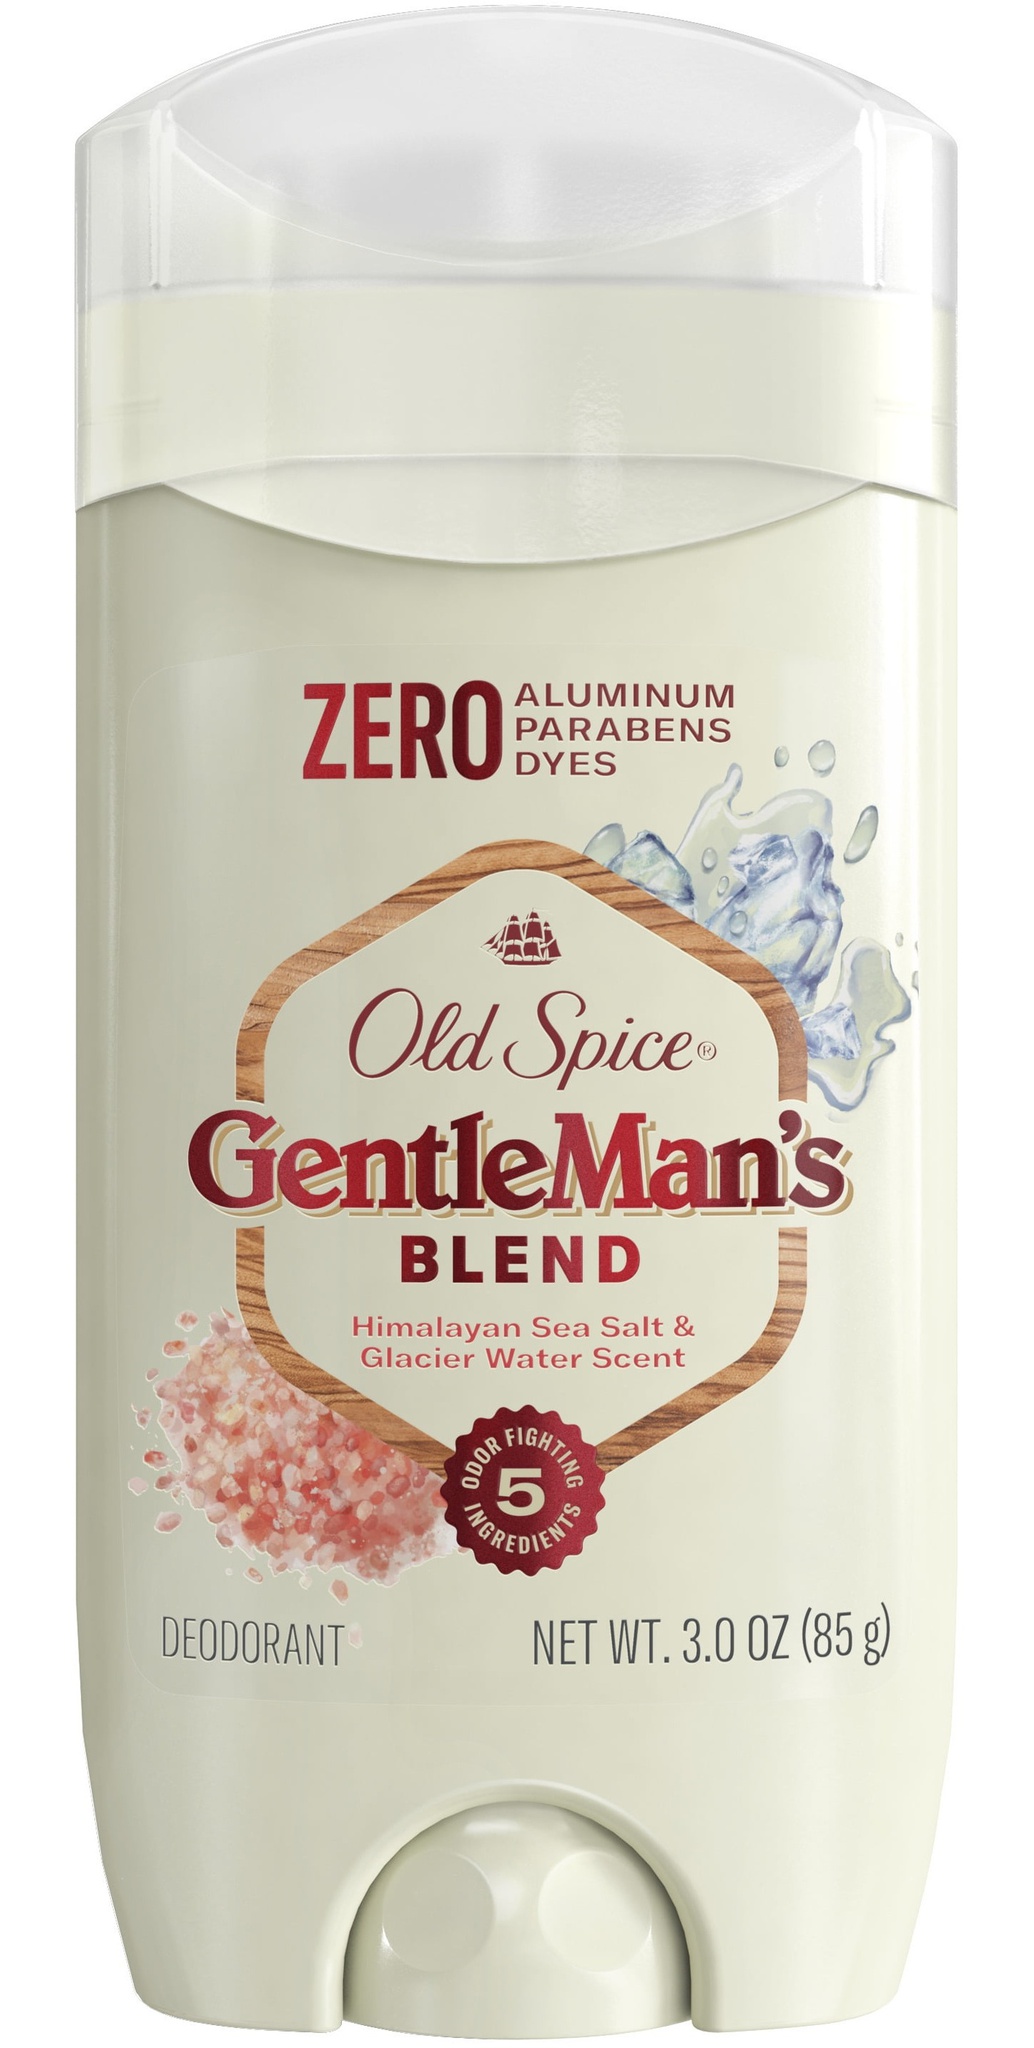 Old Spice Men's Gentleman's Blend Himalayan Sea Salt Deodorant - Sea Minerals Scent